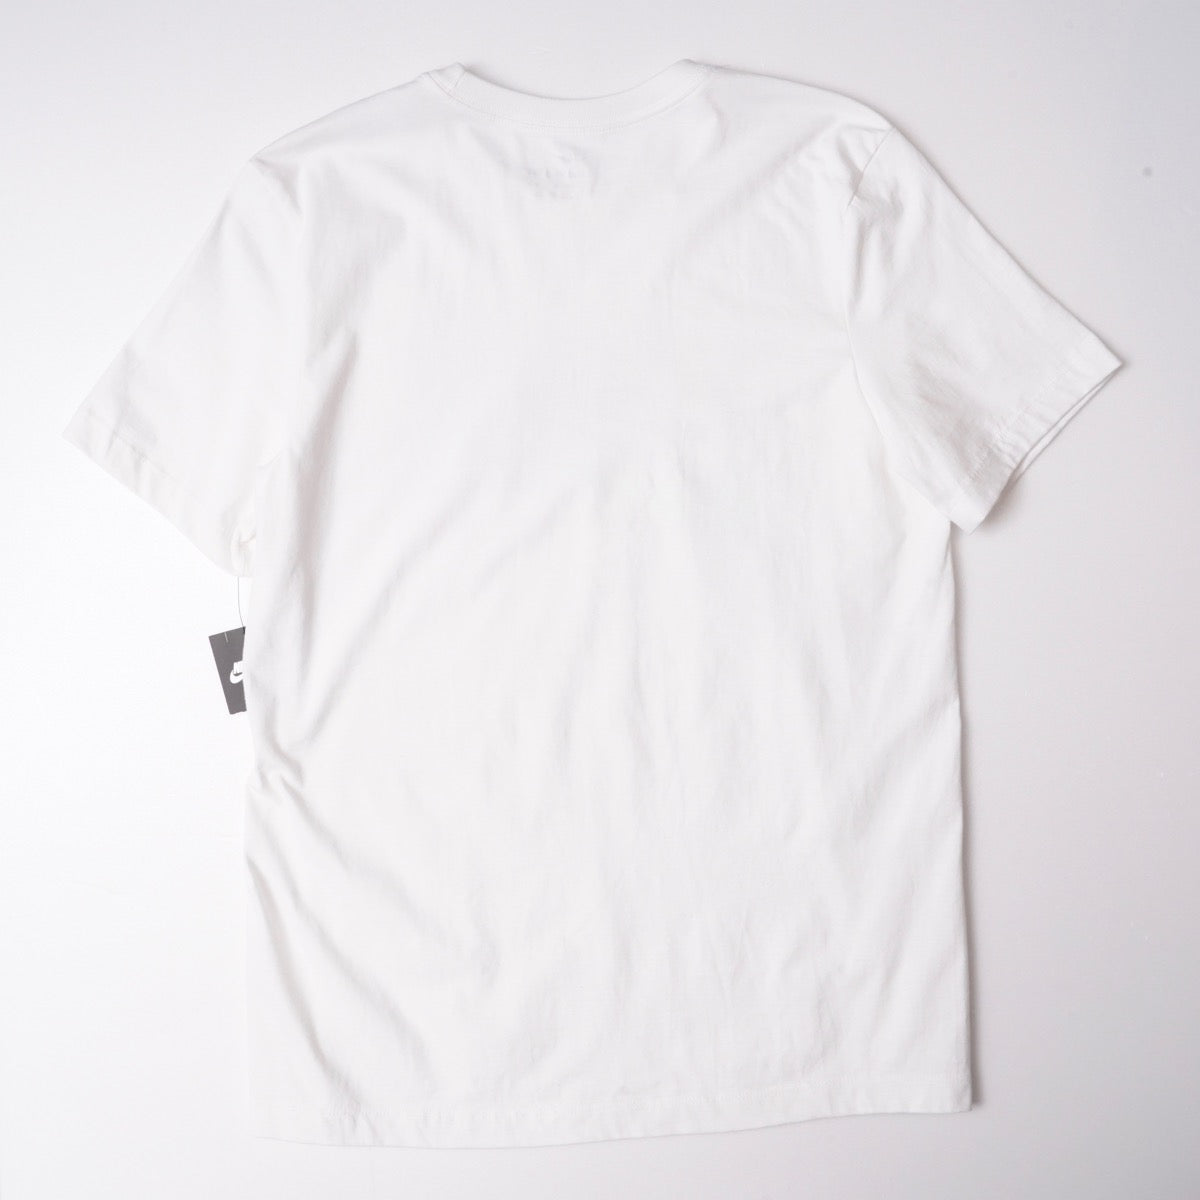 ナイキ 白 Tシャツ JUST DO IT ホワイト NIKE WHITE TEE T-SHIRT